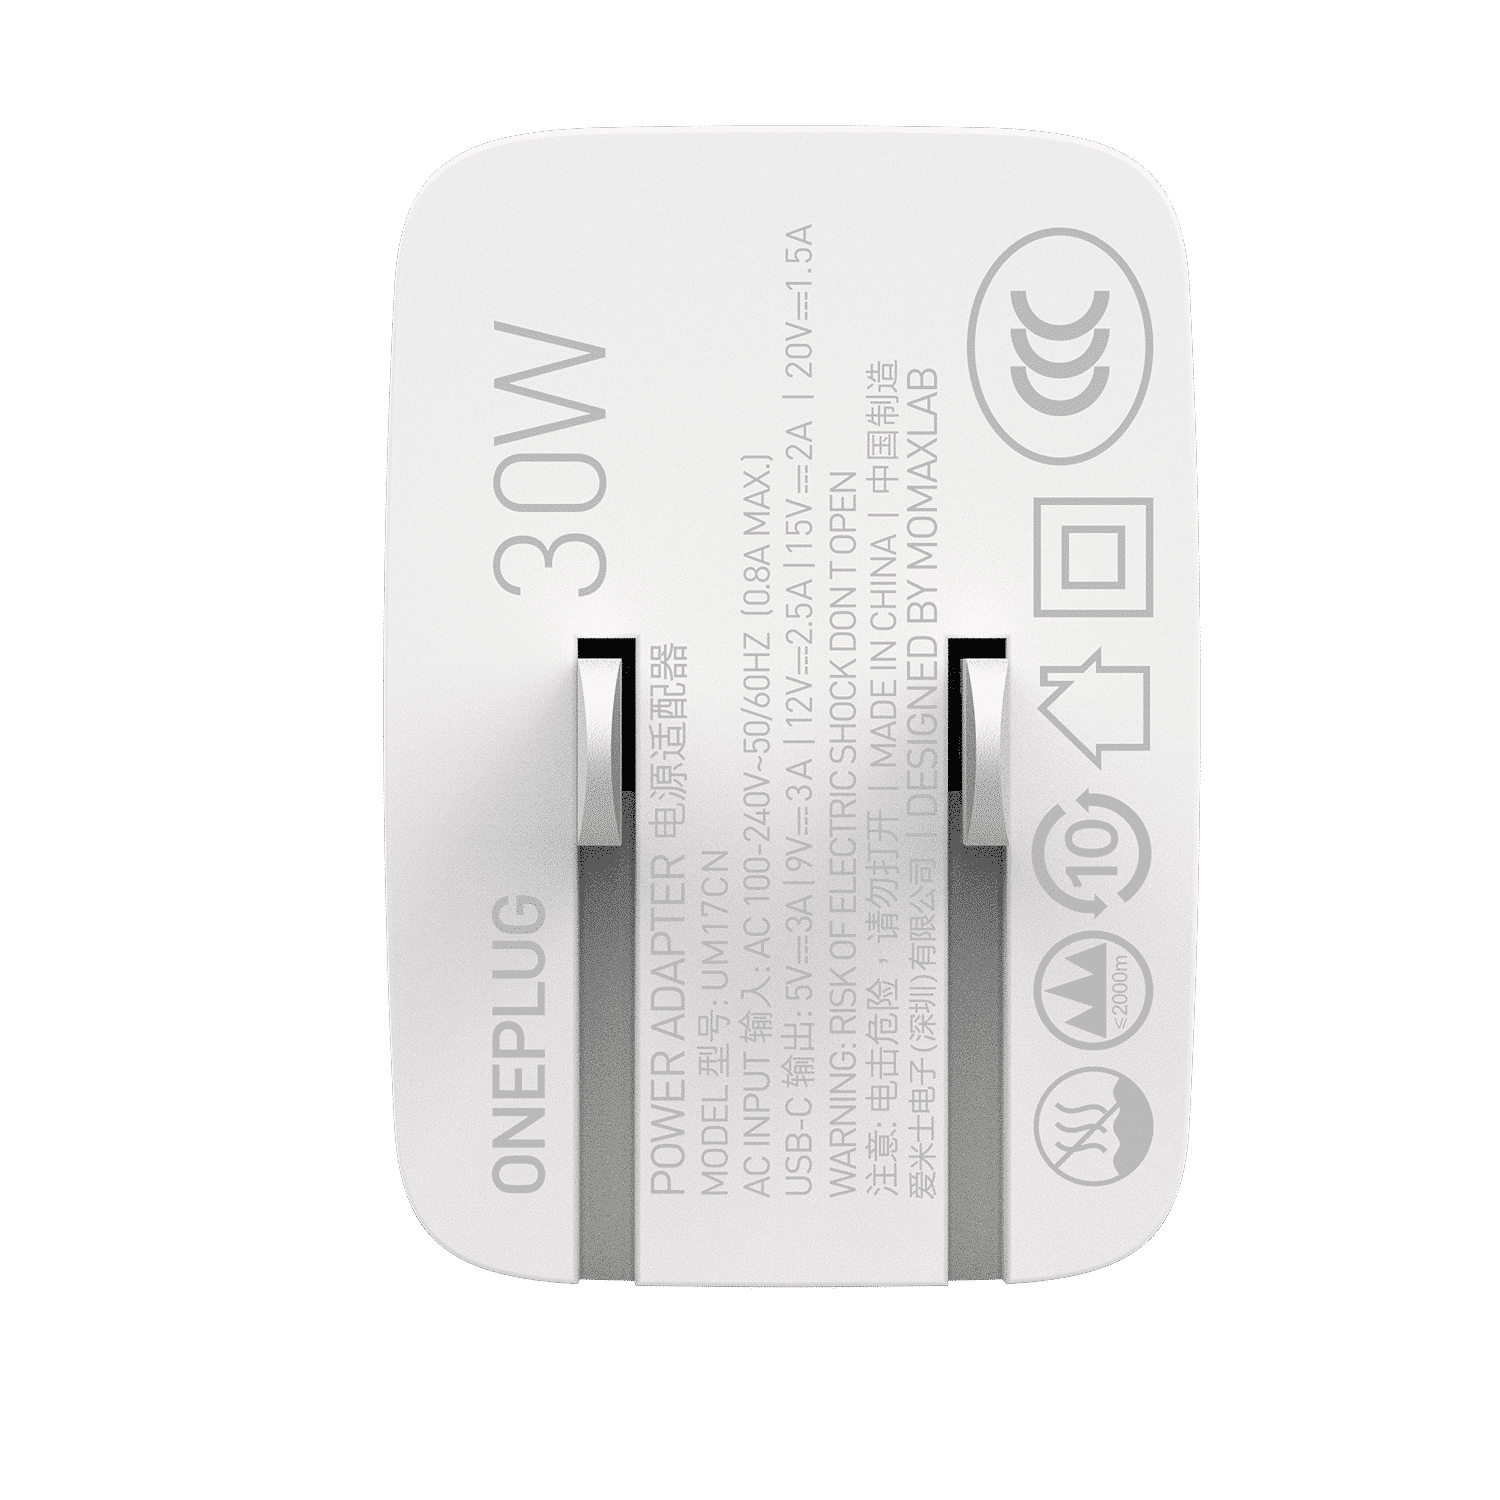 หัวปลั๊กชาร์จเร็ว Momax รุ่น ONE Plug 1-Port USB-C PD Charger (30W) - สีขาว